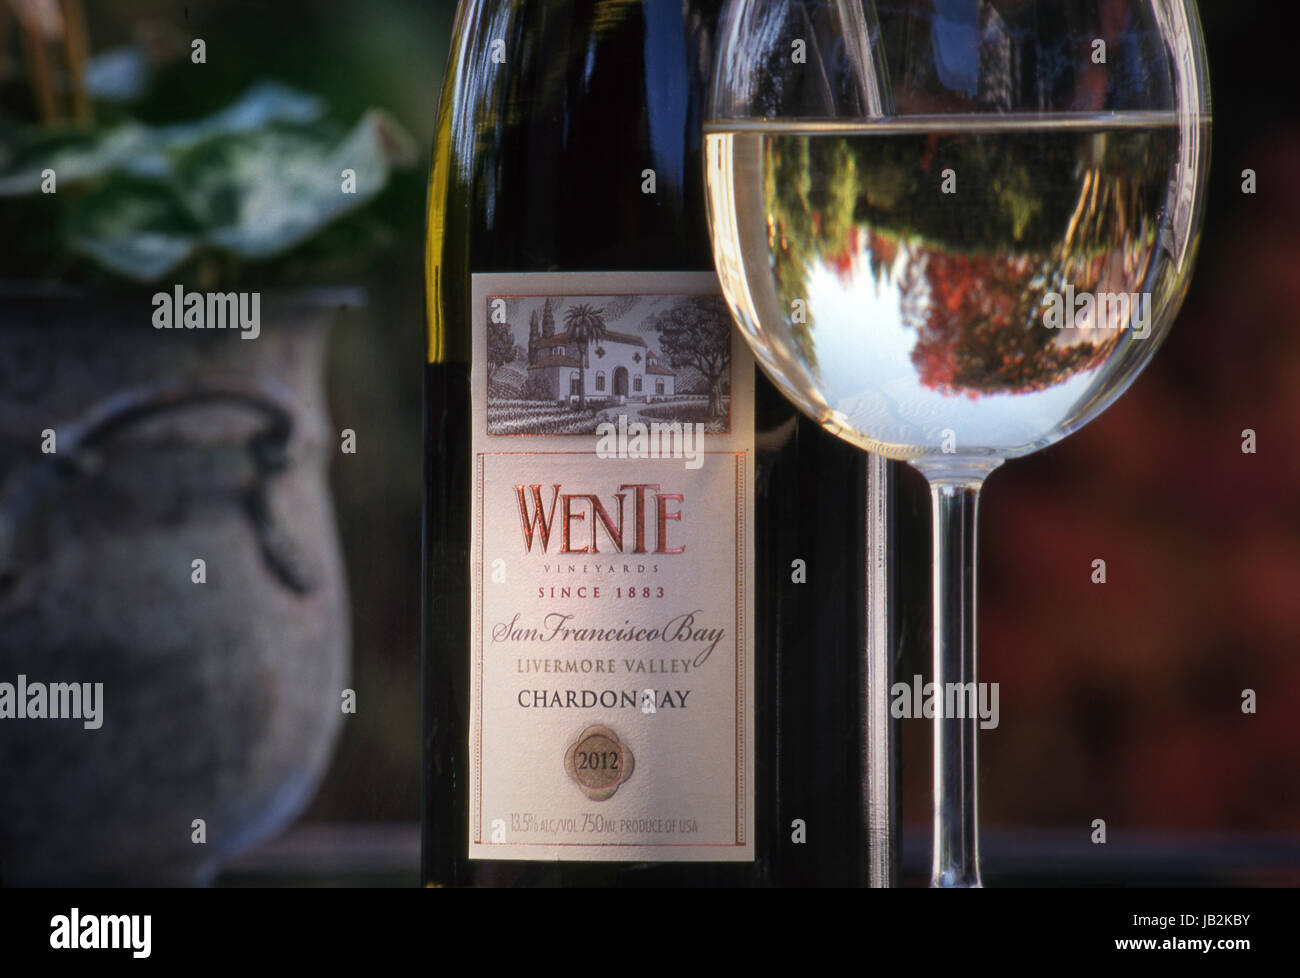 WENTE CHARDONNAY Alfresco bouteille de dégustation de vin et verre de Wente Chardonnay, sur la terrasse du jardin table Livermore Valley, Californie Etats-Unis Banque D'Images